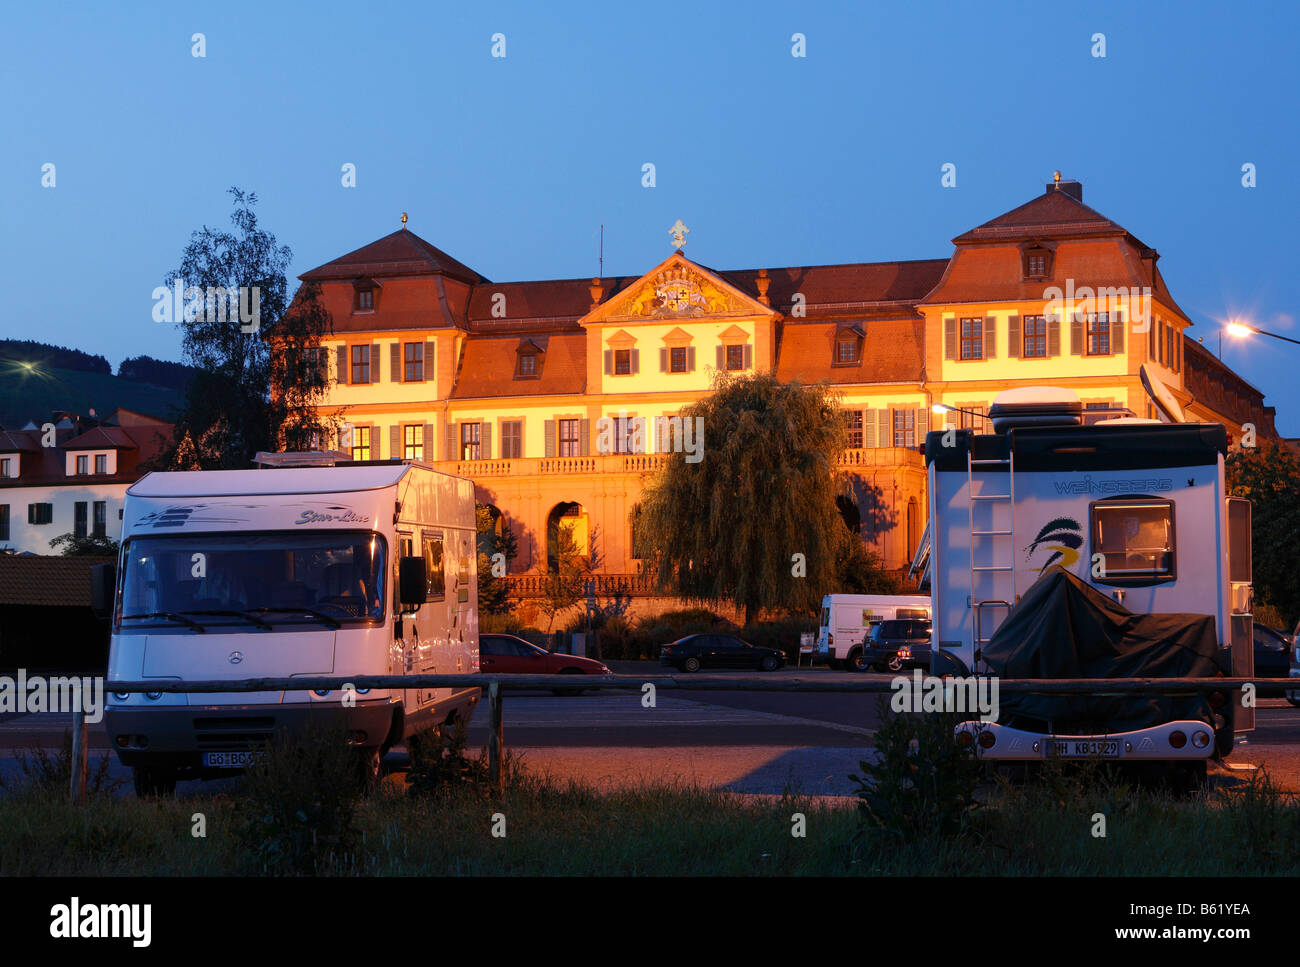 Wohnmobile geparkt vor der beleuchteten Kellereischloss, rotes Schloss, Hammelburg, Rhön, Franken, Niederbayern, Germa Stockfoto